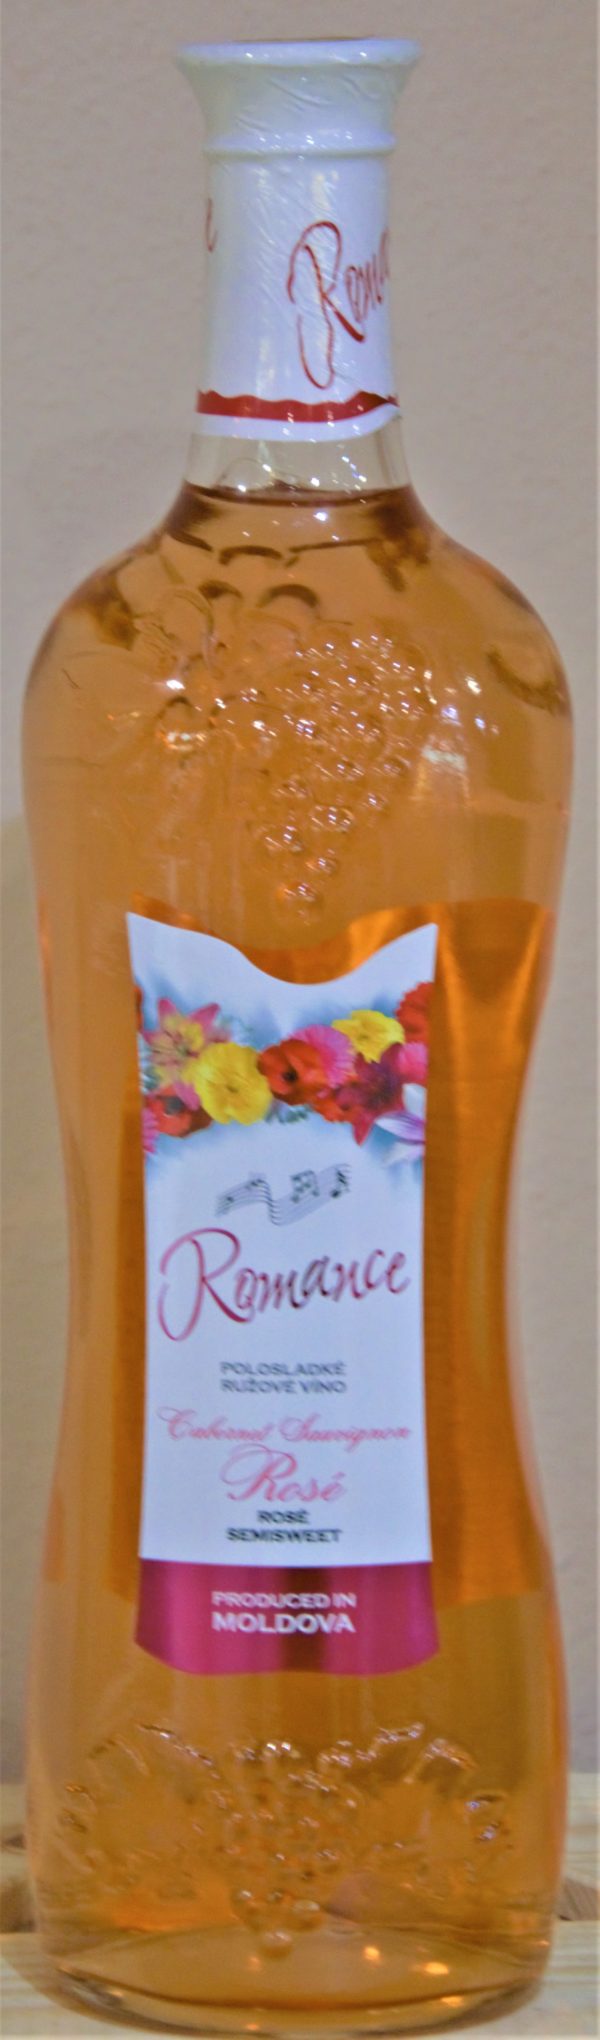 Cabernet Sauvignon Rosé Romance